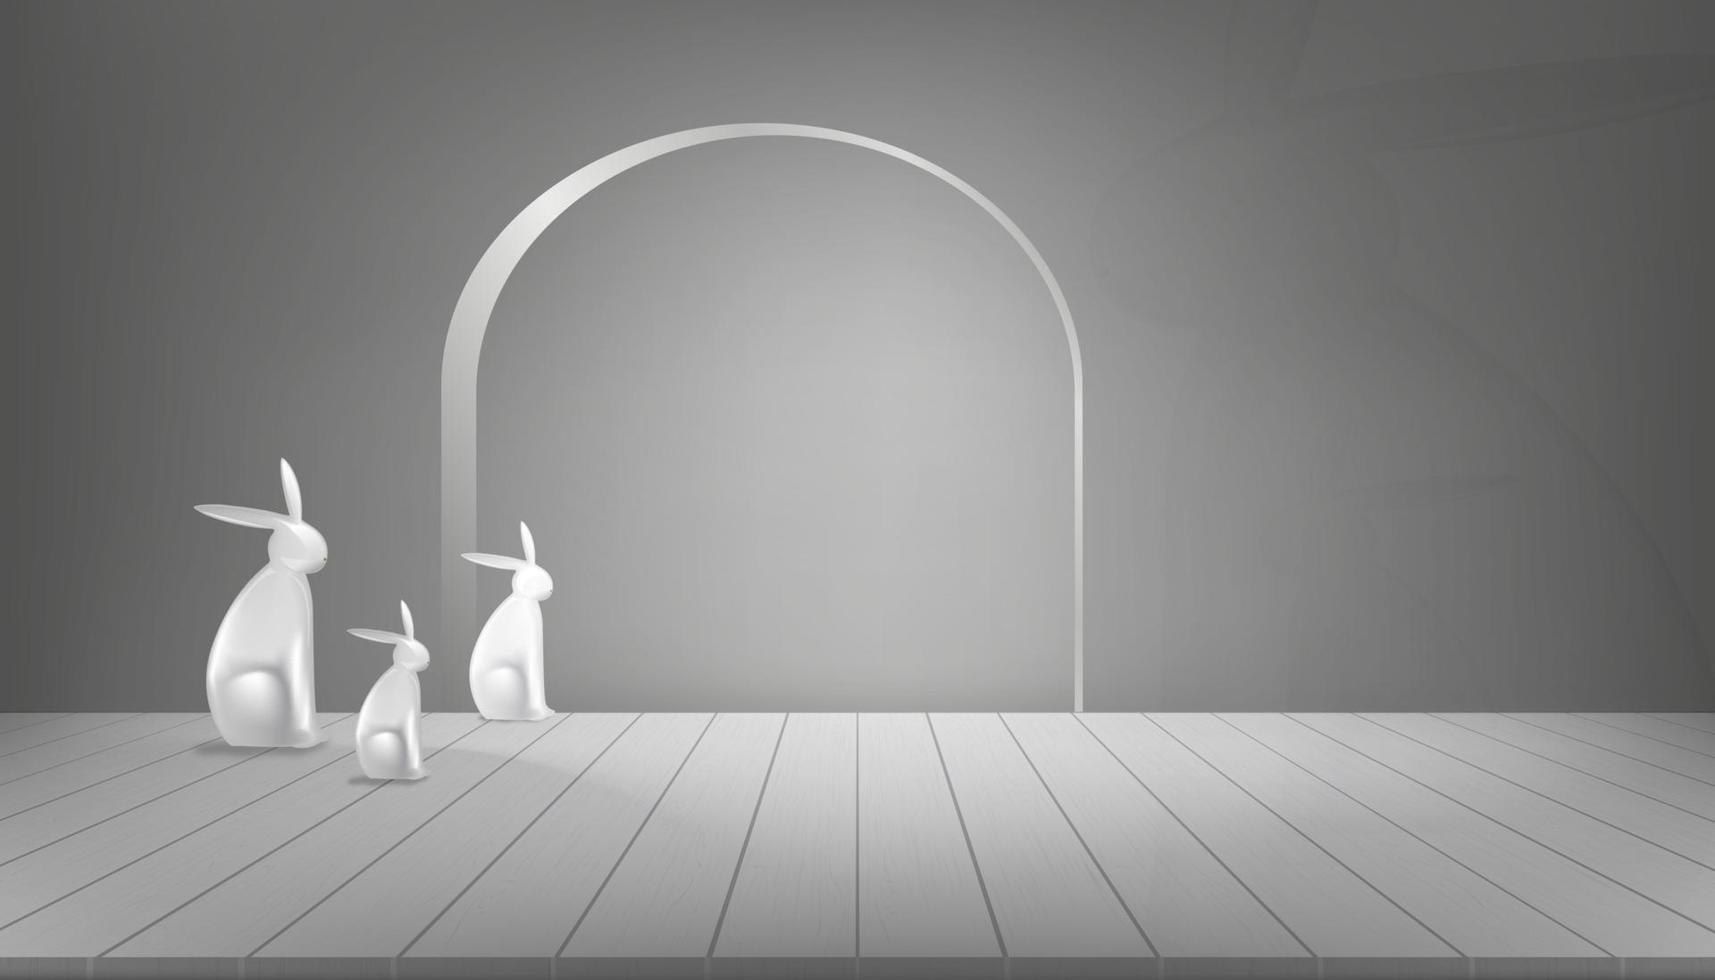 camera studio con statua della famiglia del coniglio 3d su pannello di legno con sfondo grigio scuro della parete illustrazione vettoriale con pavimento grigio con luce e ombra sul bordo della parete concetto di design in stile moderno minimo